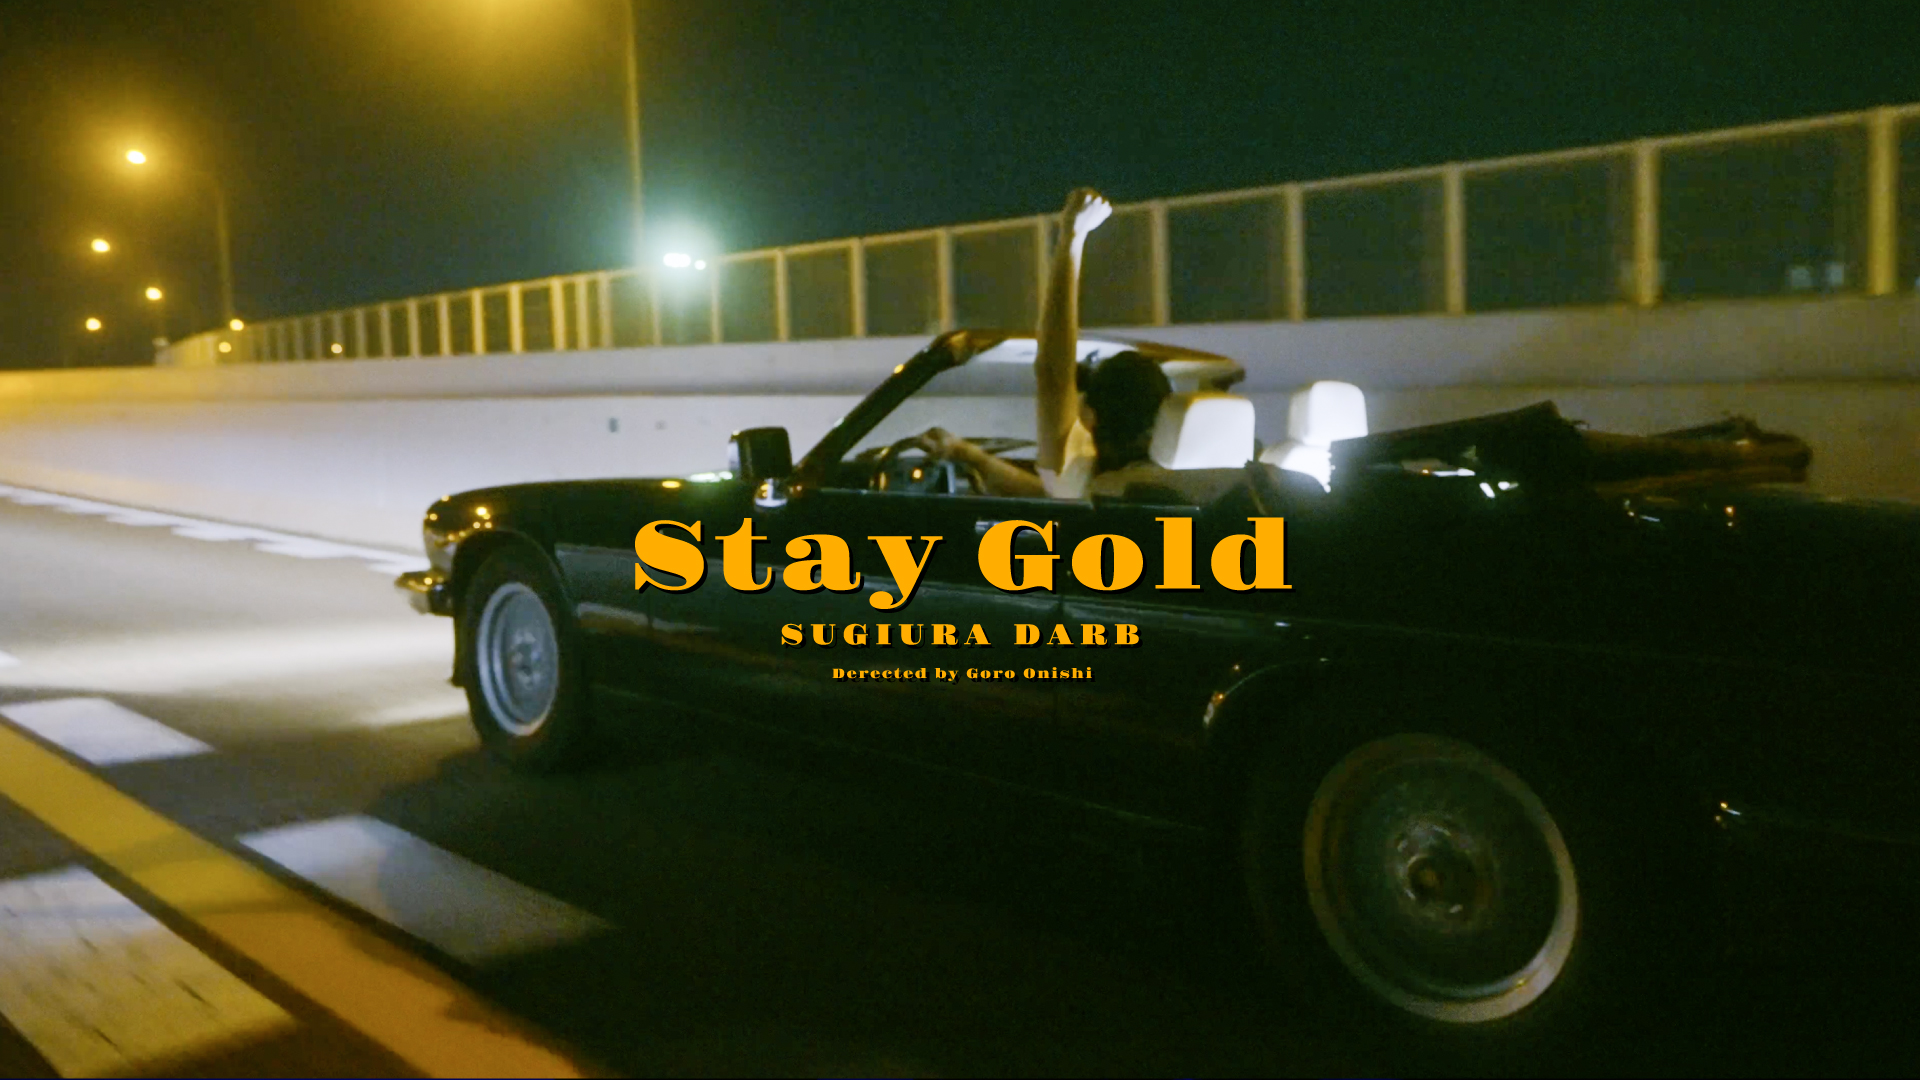 スギウラダーブ『Stay Gold』MV